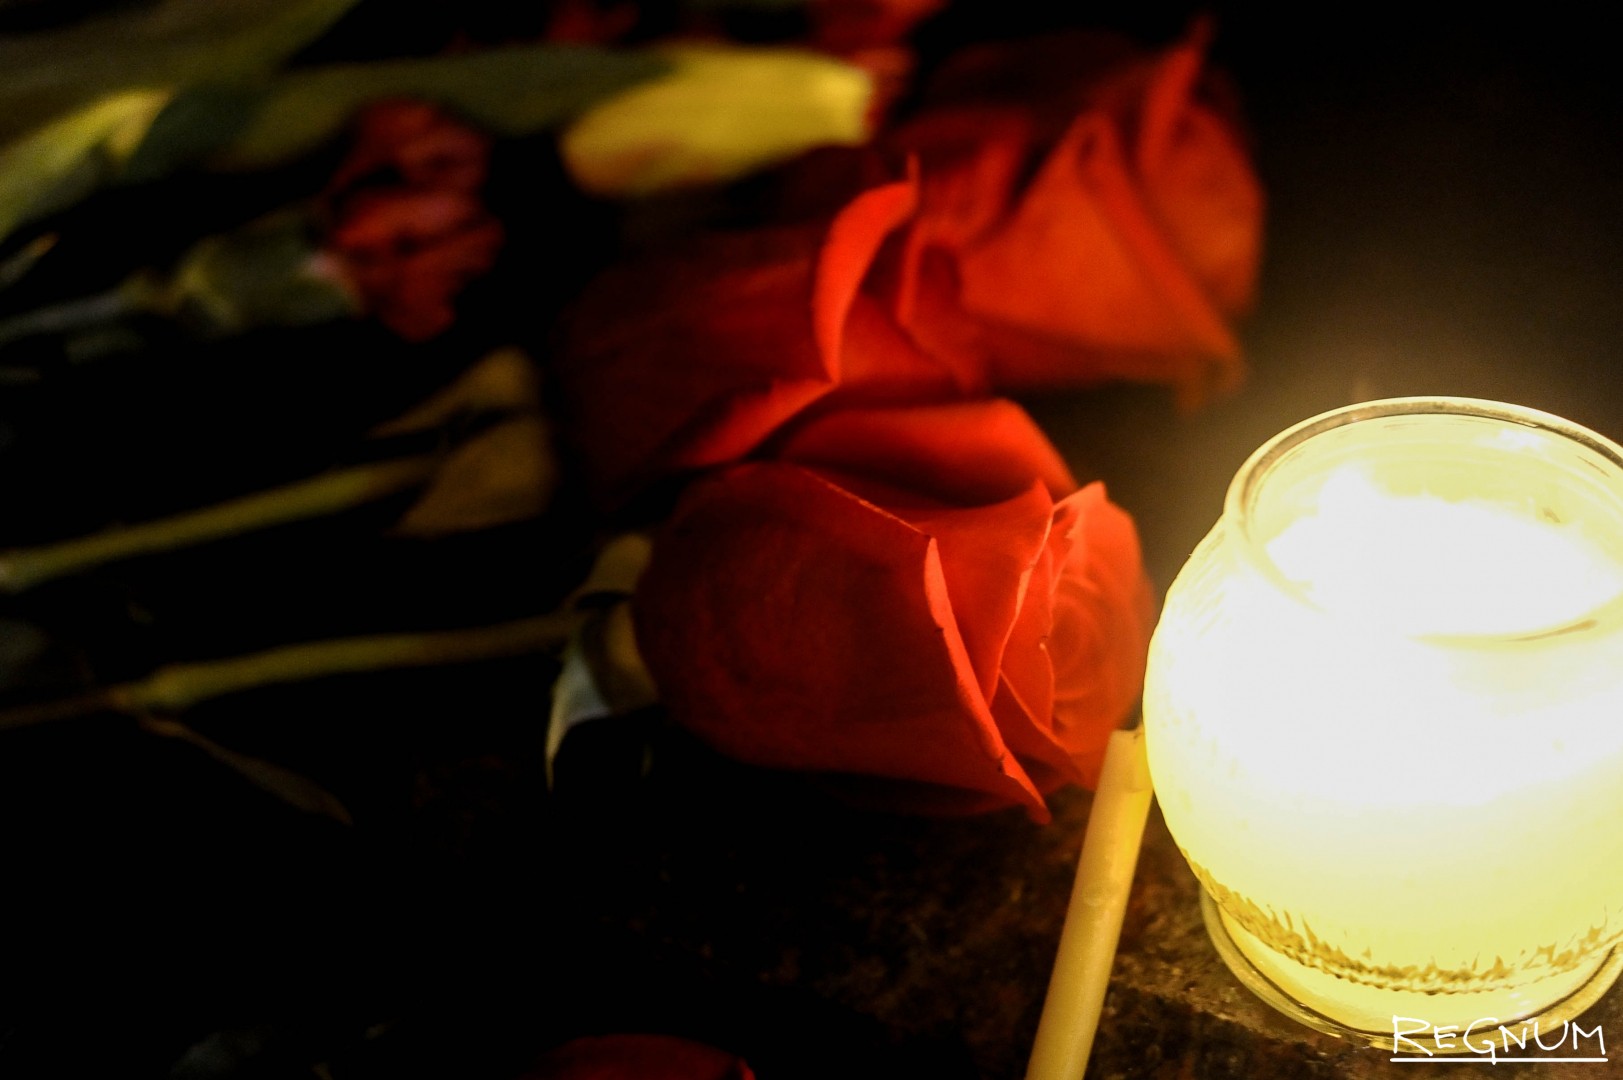 Скорбим фото со свечой 22.03. Поминальная свеча. Траур. Цветы и свечи. Траурные свечи и цветы.